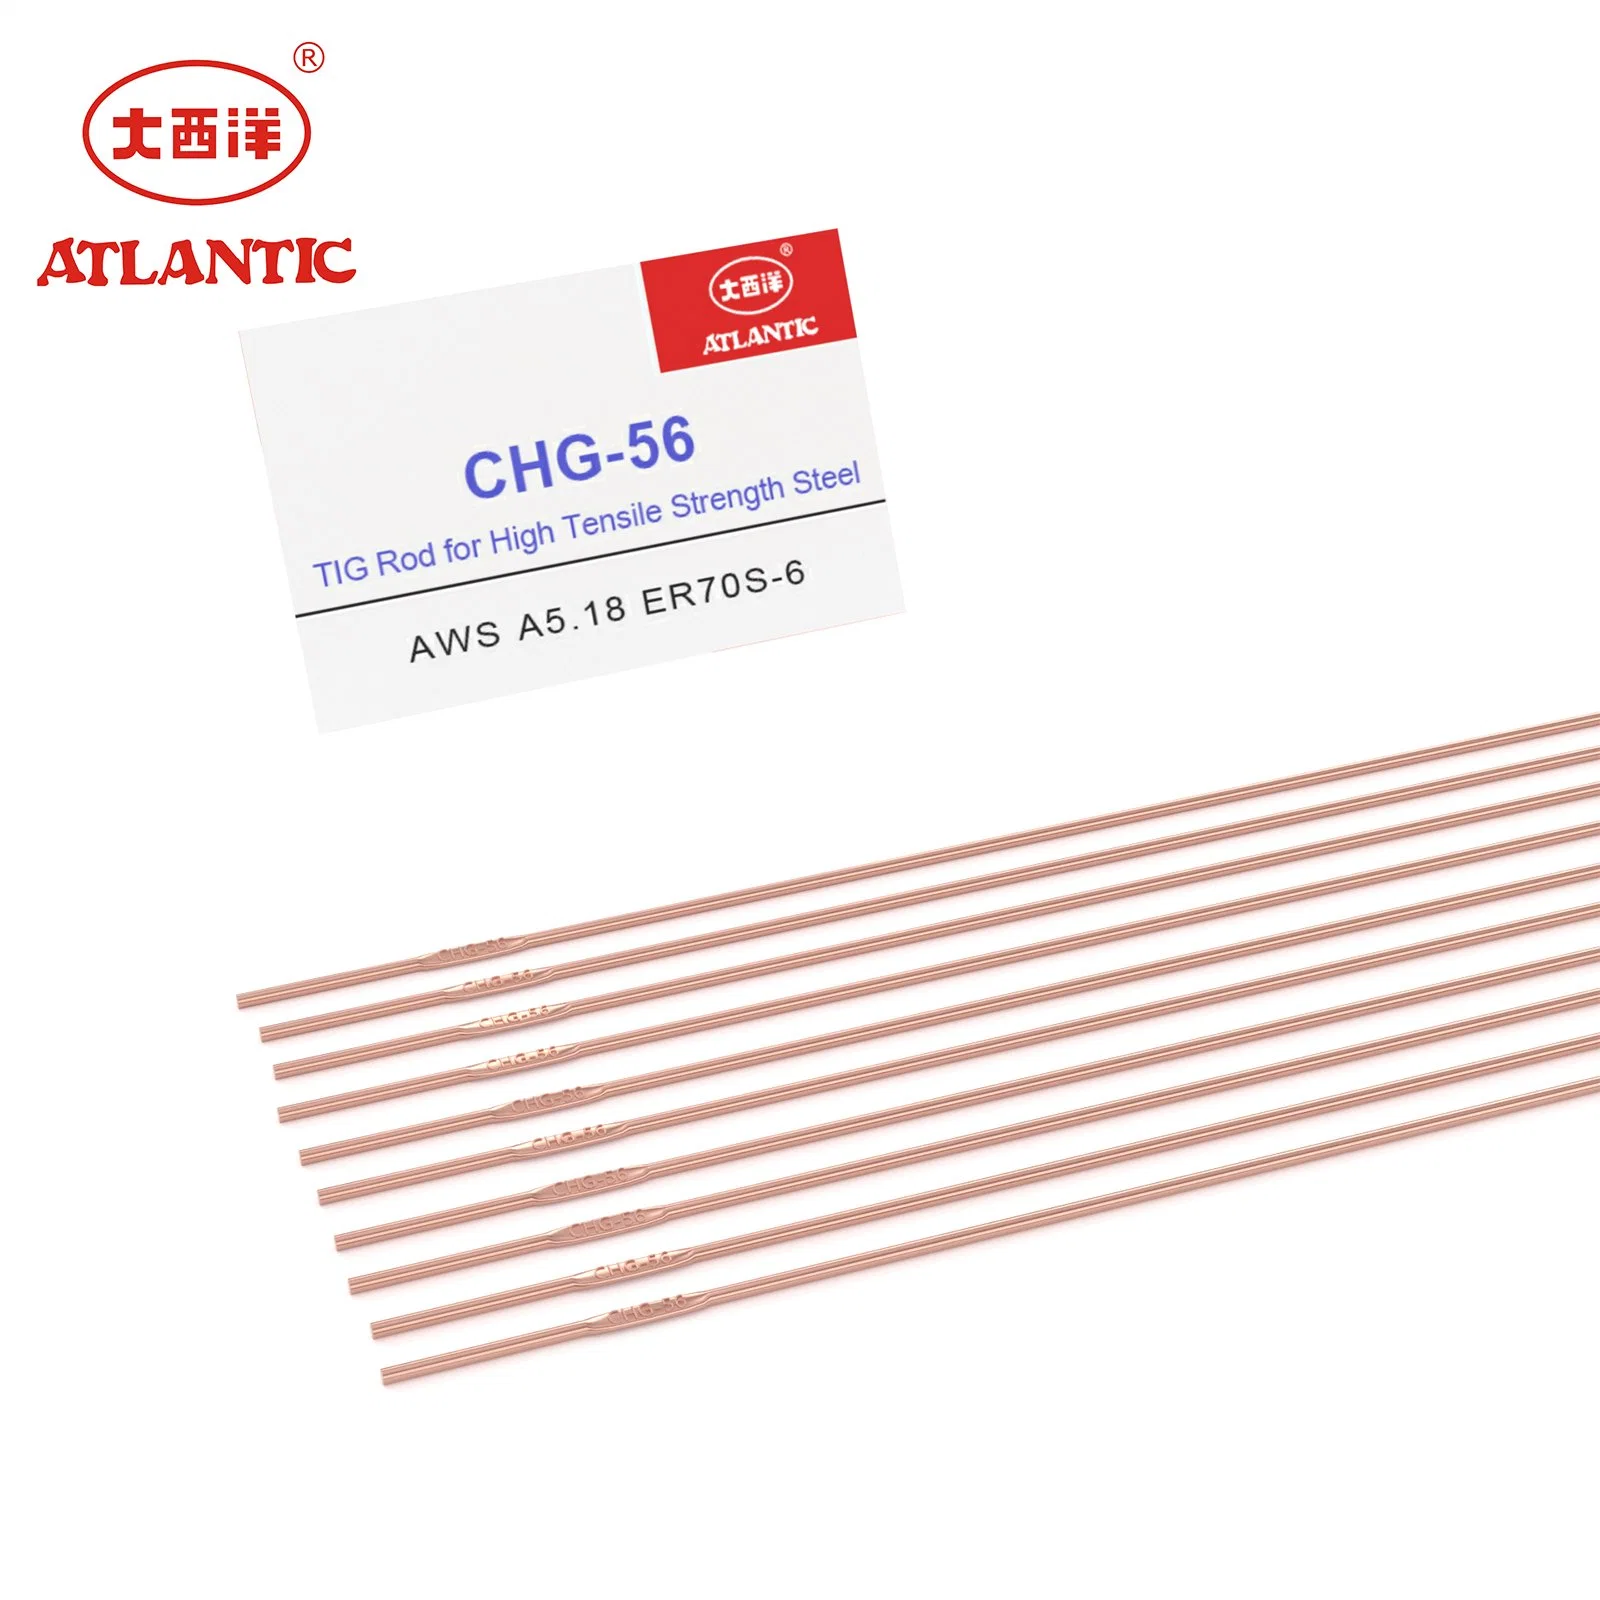 Atlantic 3.2mm Custom Package OEM Er70s-6 Welding Rod Welding Electrode for High Tensile Steel